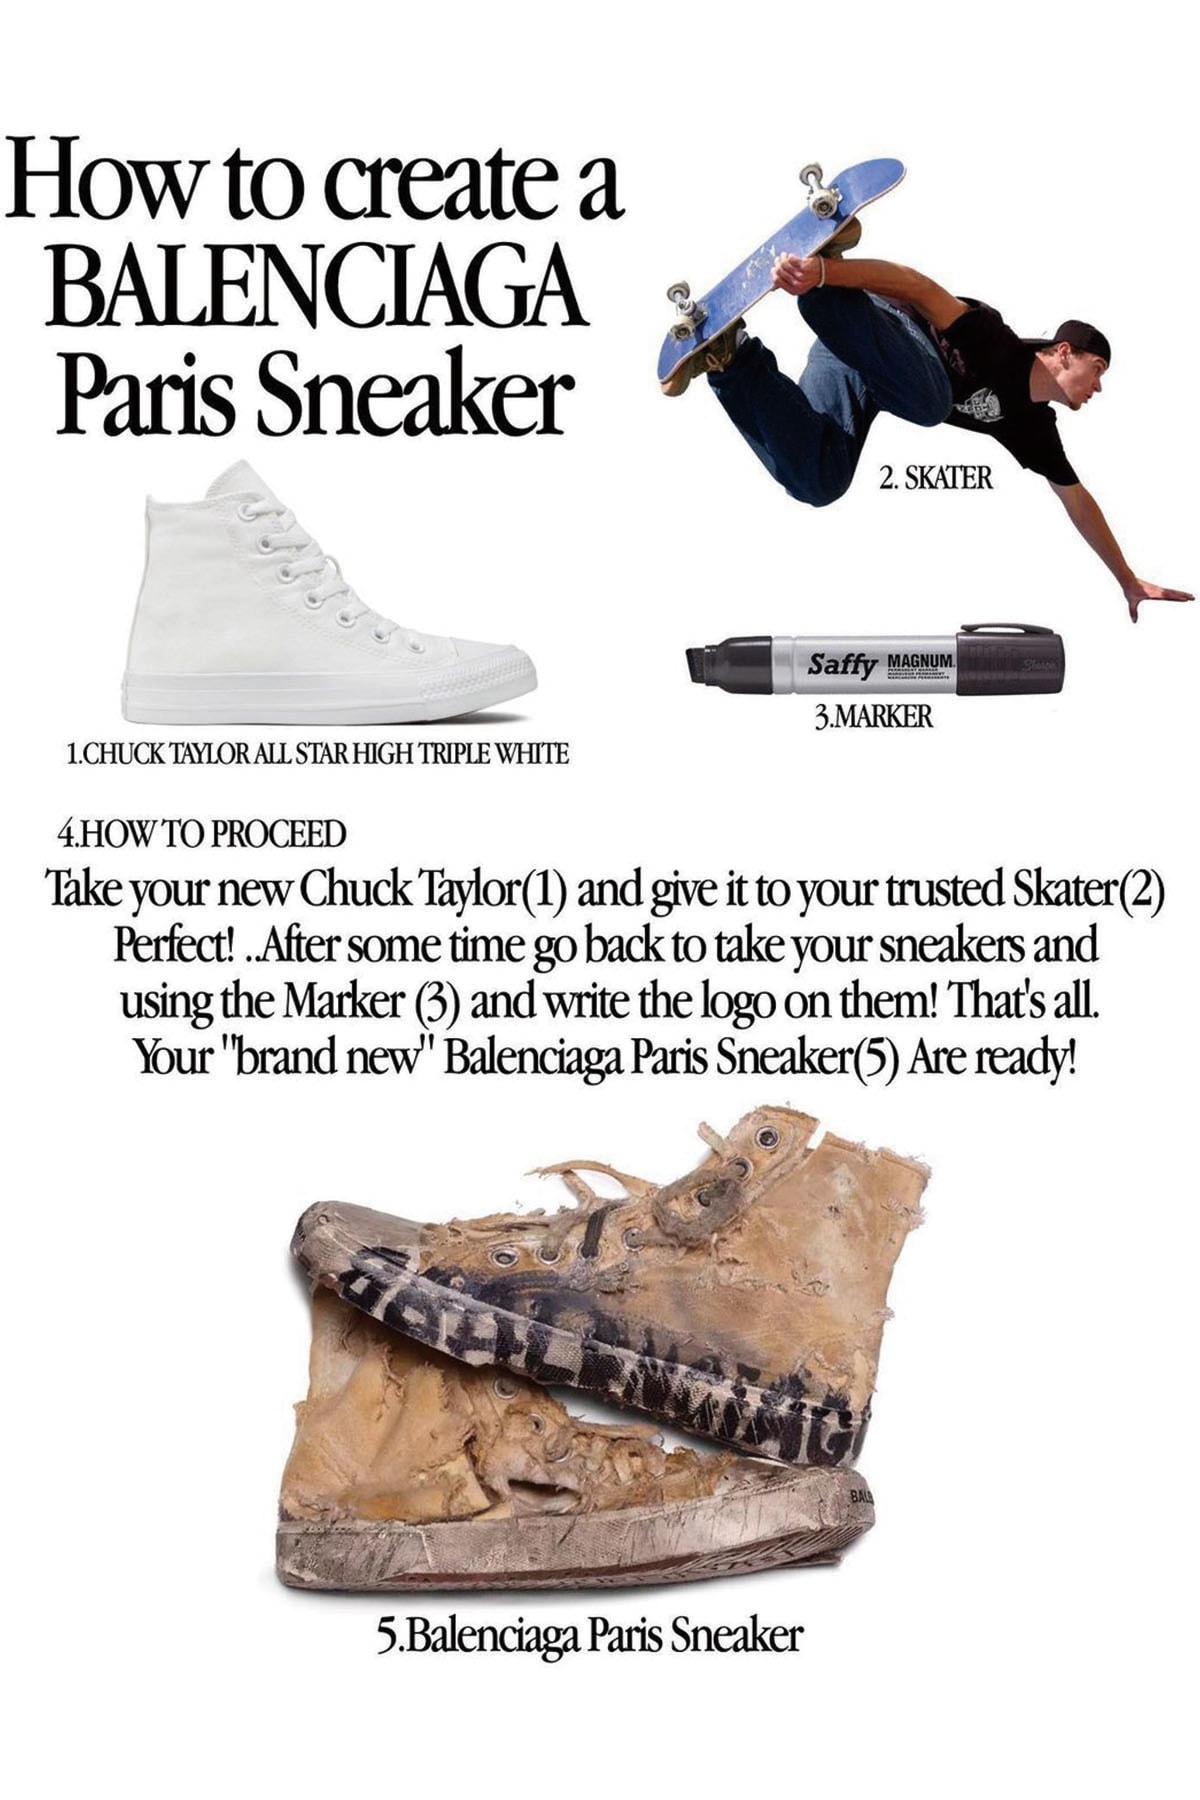 如何自製 Balenciaga 要價 $1,850 美元的破舊風格鞋款「Paris Sneaker」